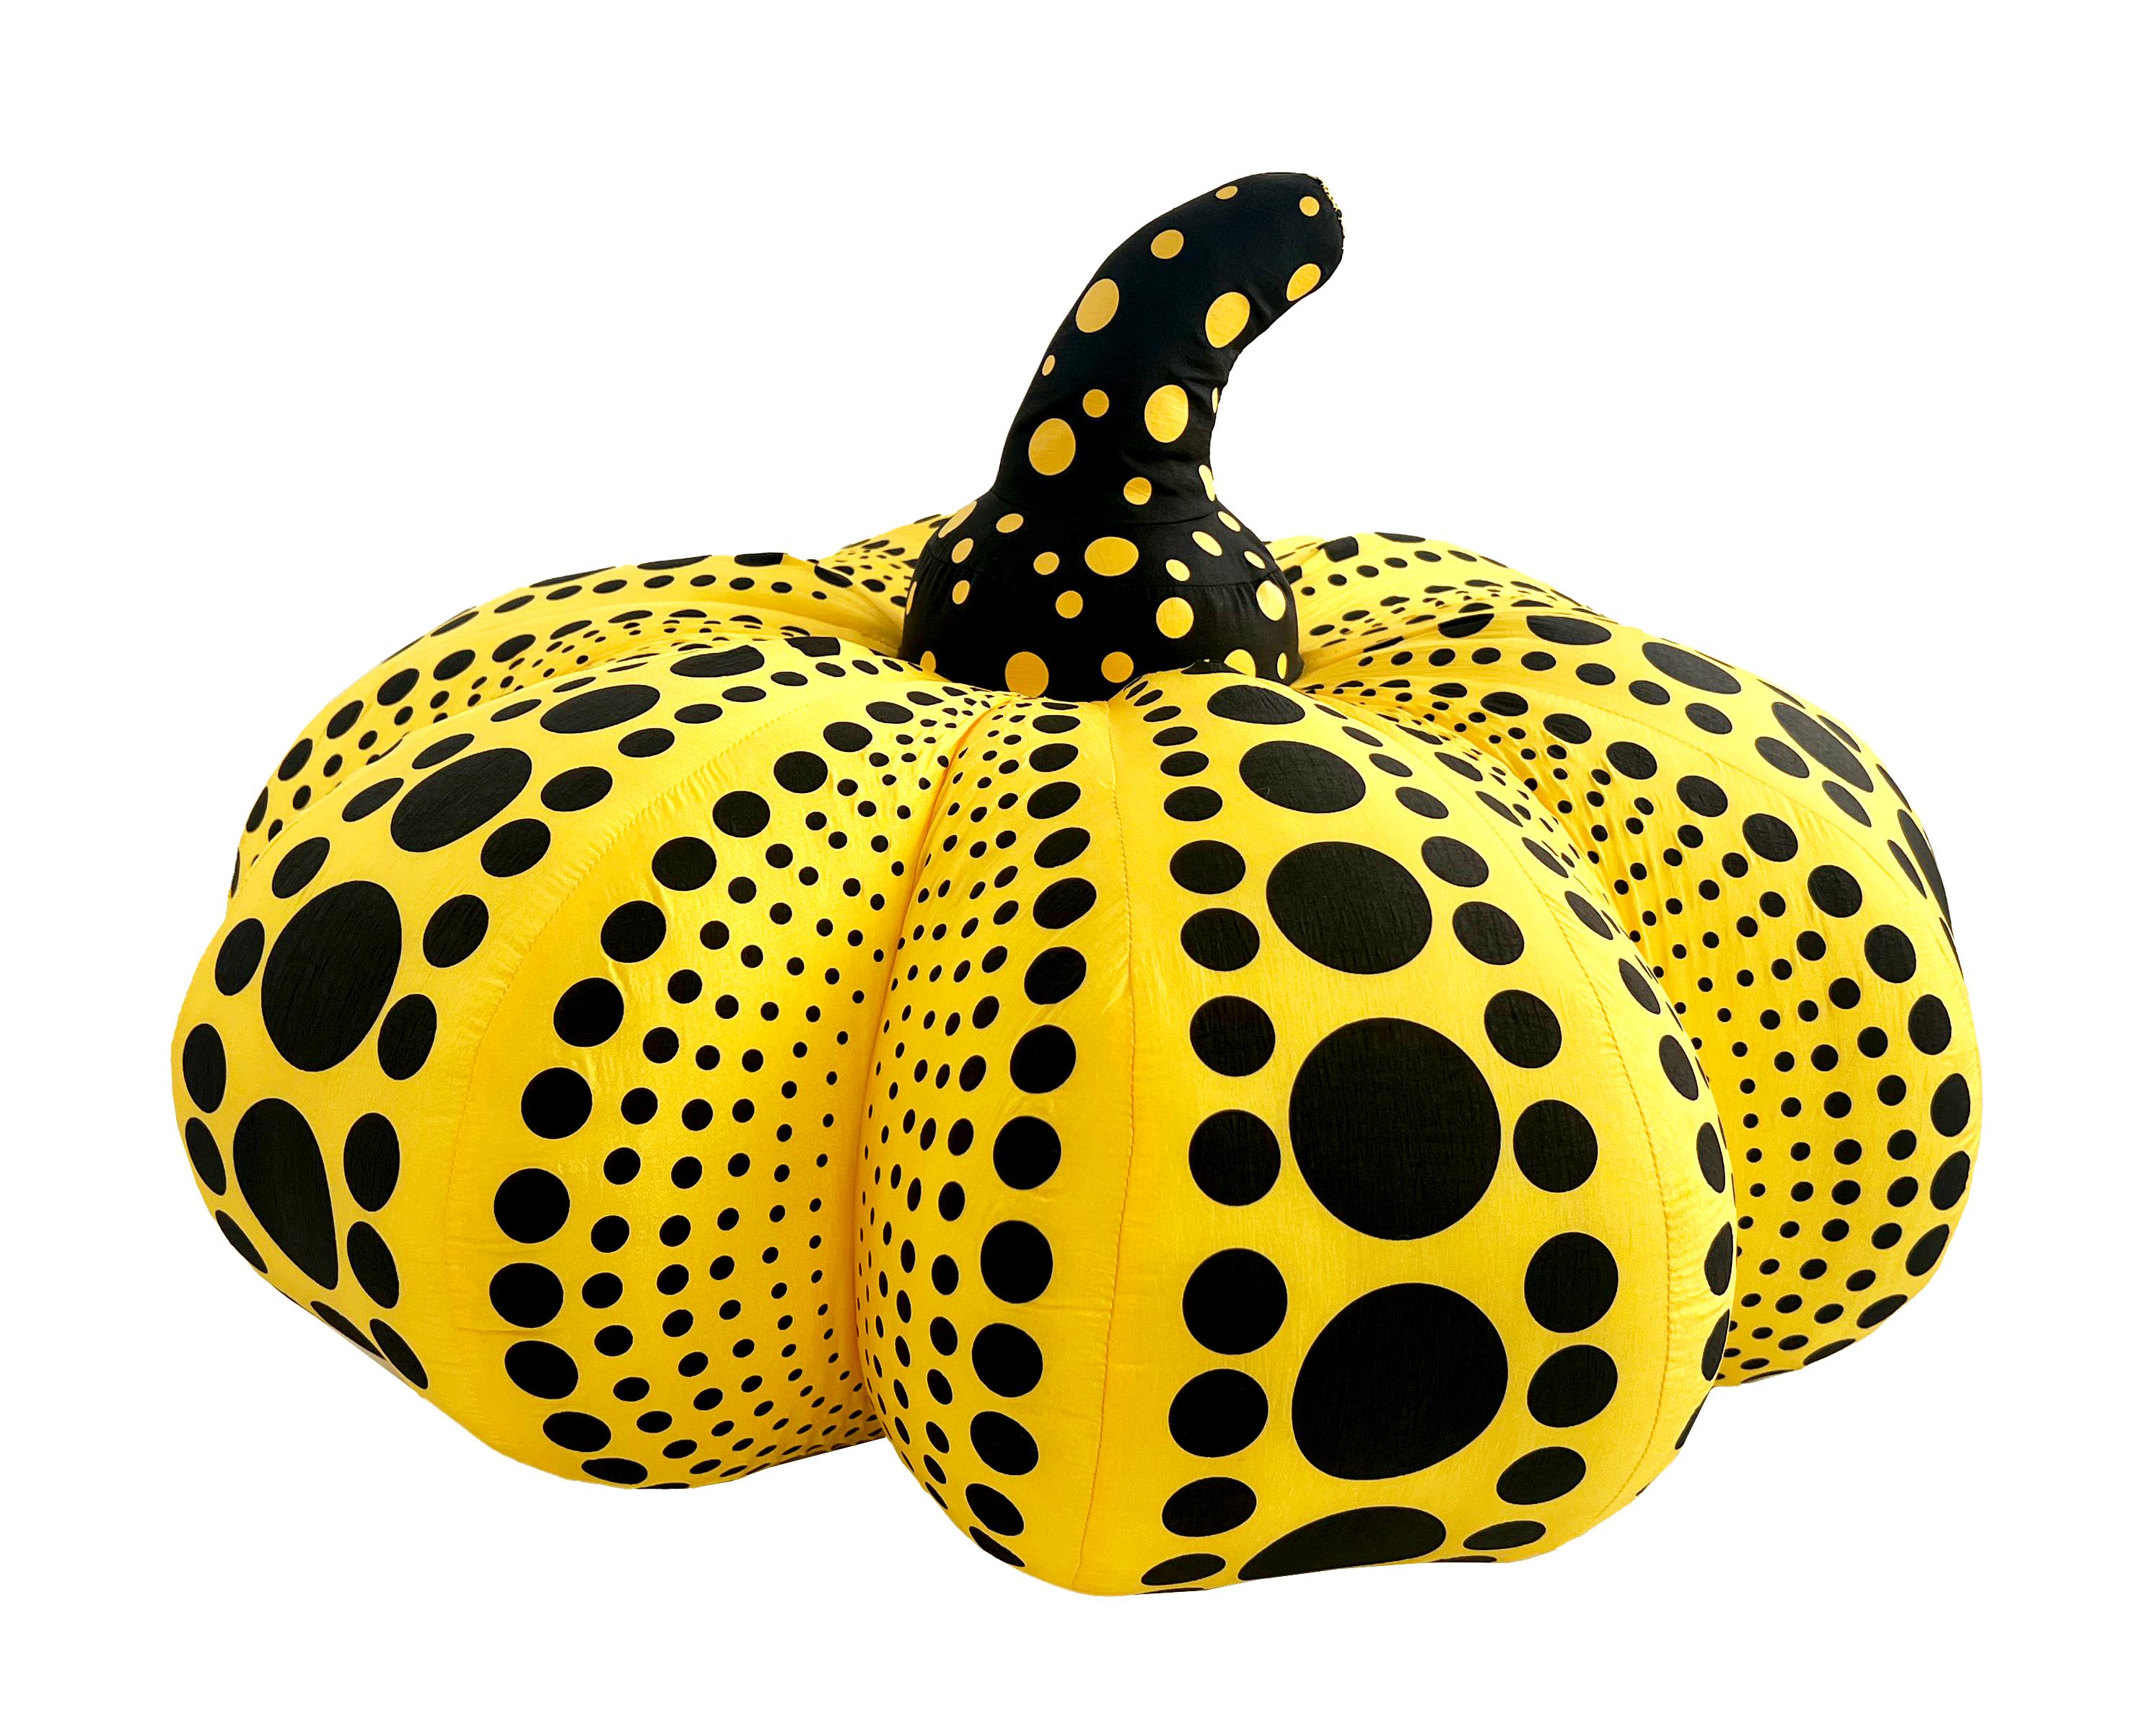 Kusama Pumpkin (Kusama yellow & black large plush pumpkin) - Print by Yayoi Kusama